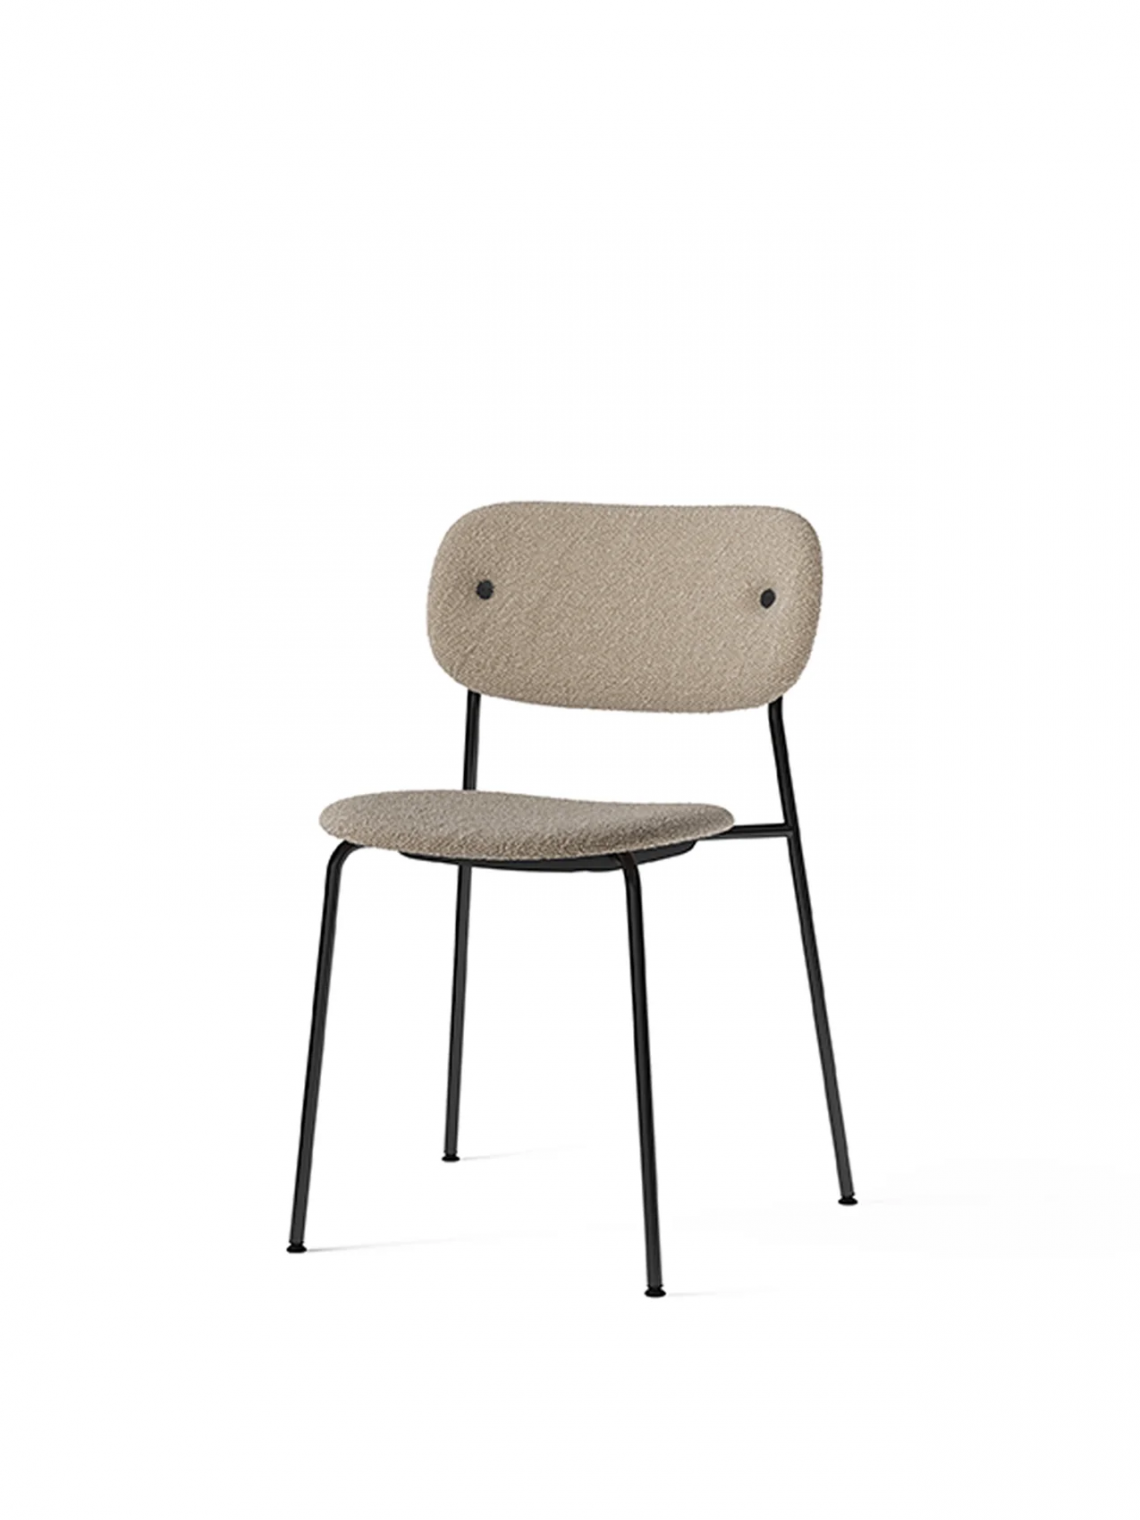 Co fully upholstered, Chrome餐椅细节图2